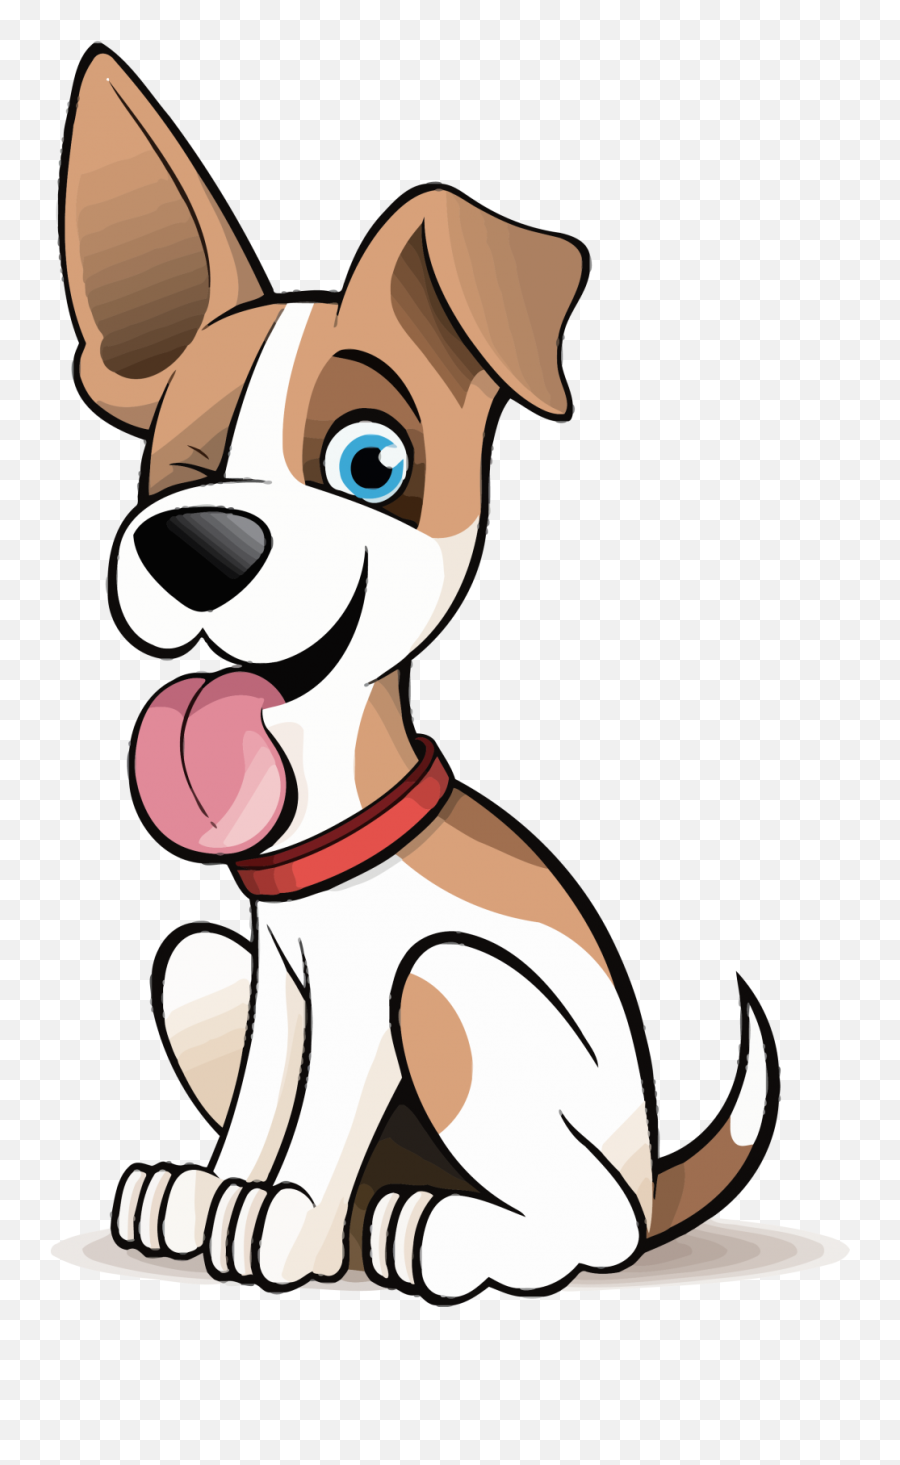 Cute Cartoon Dog Clipart - Cartoon Cute Dog Clipart Emoji,Cute Animal Clipart